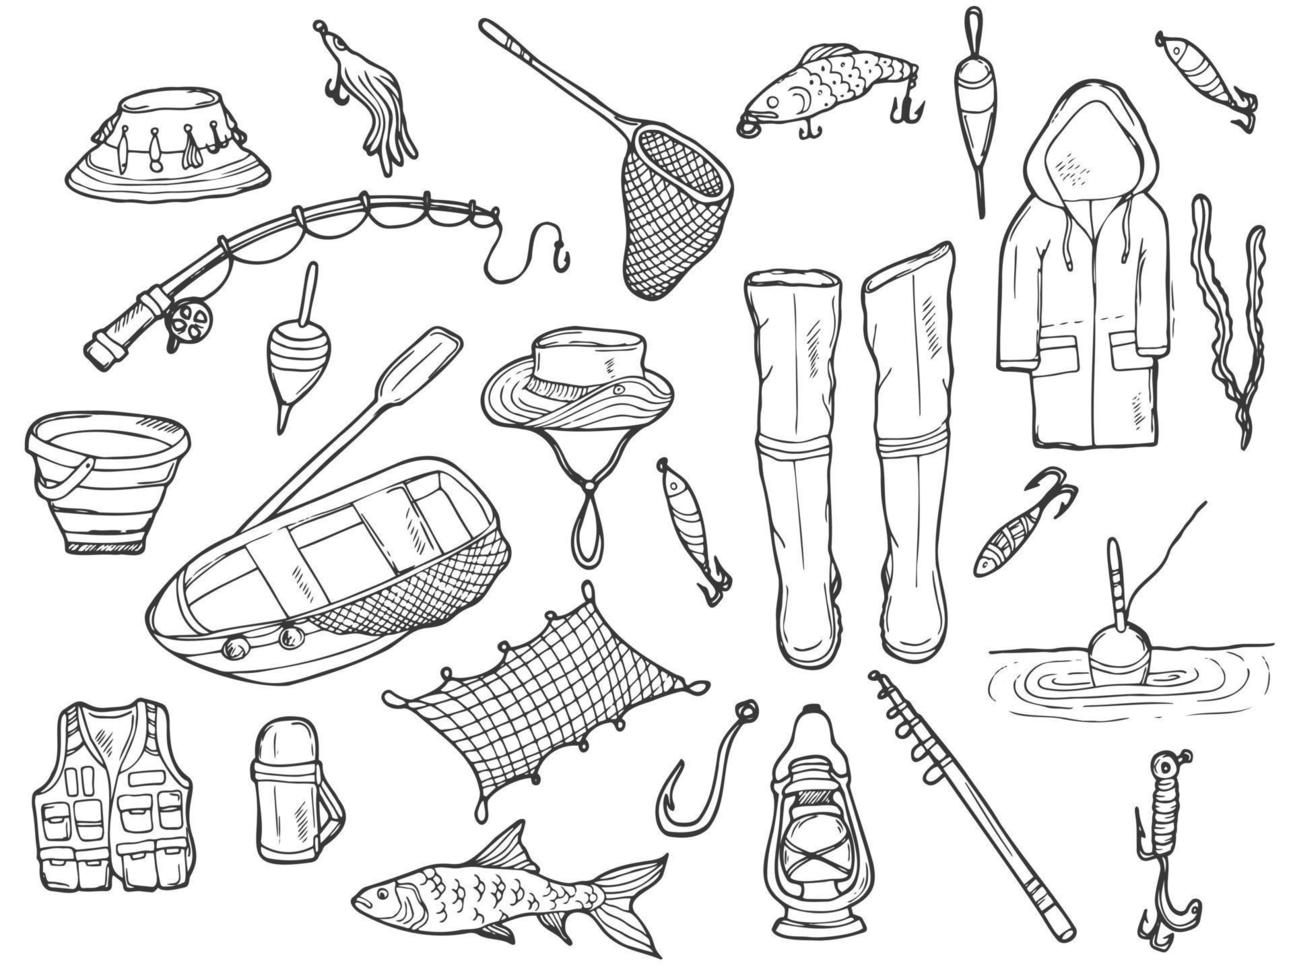 doodle conjunto de pesca. coisas de pesca e camping em vetor. mão desenhada ilustração. vetor